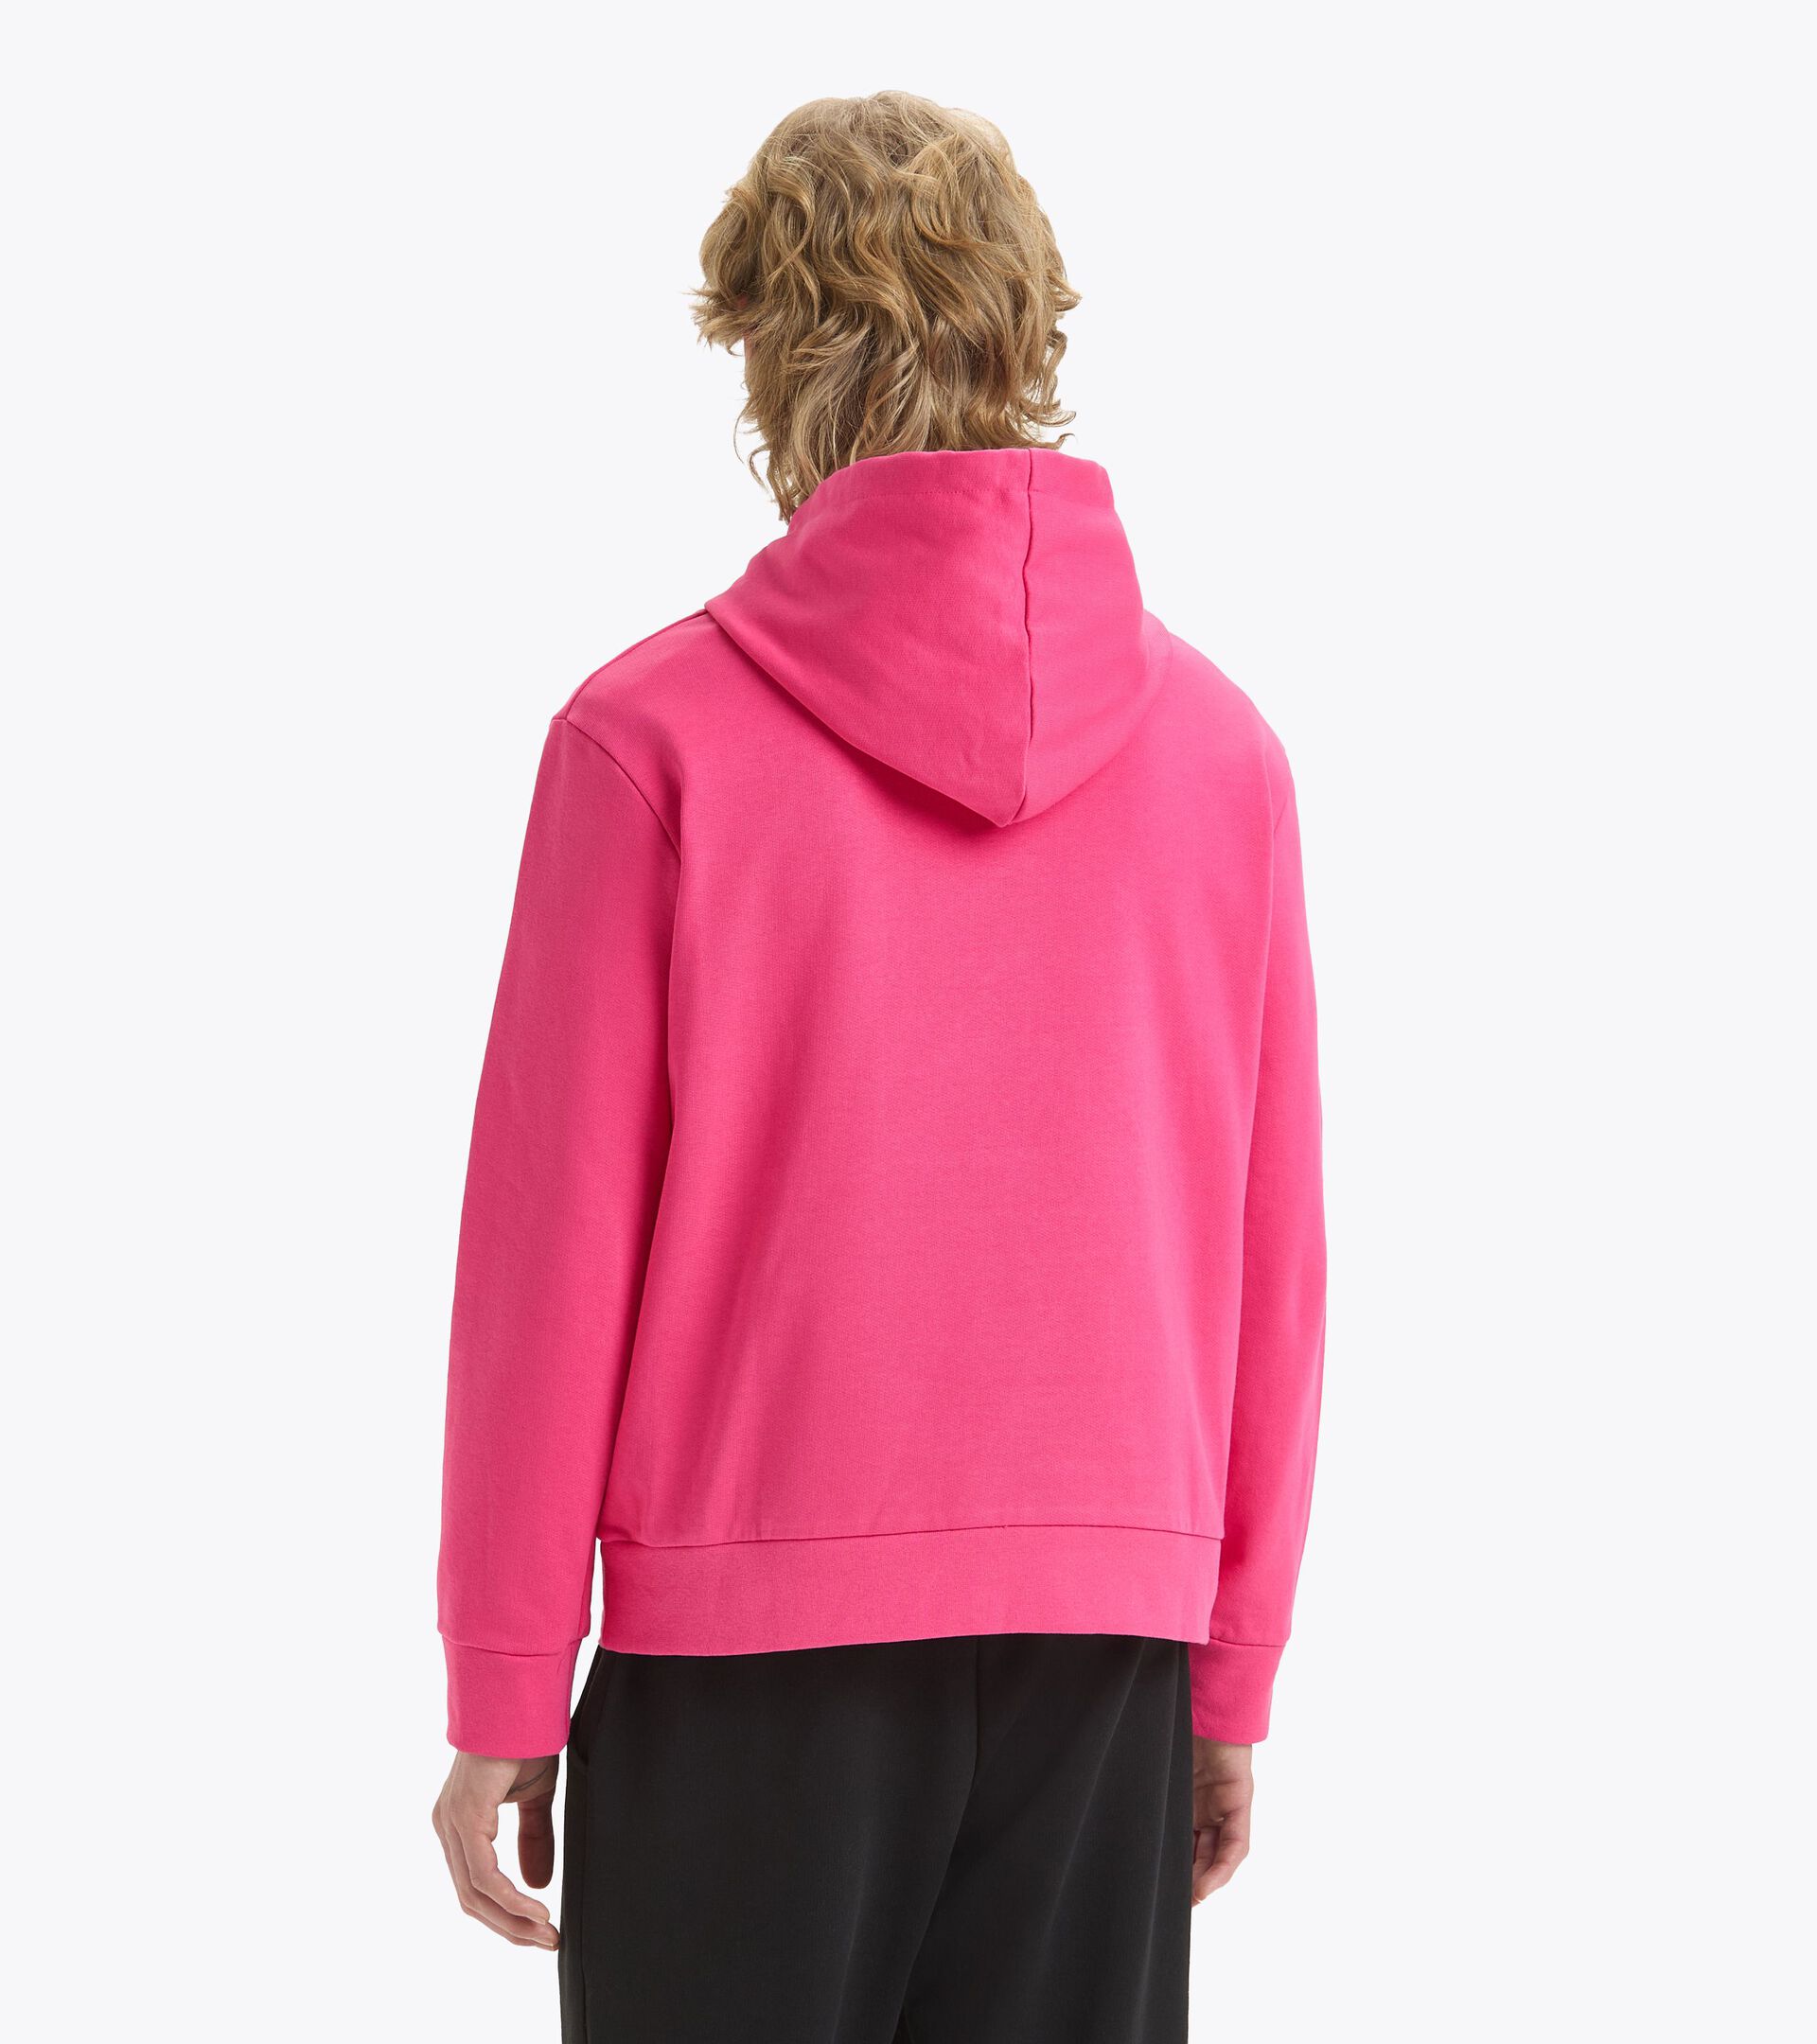 Sporty hoodie - Made in Italy - Gender Neutral HOODIE LOGO PINK SORBET - Diadora